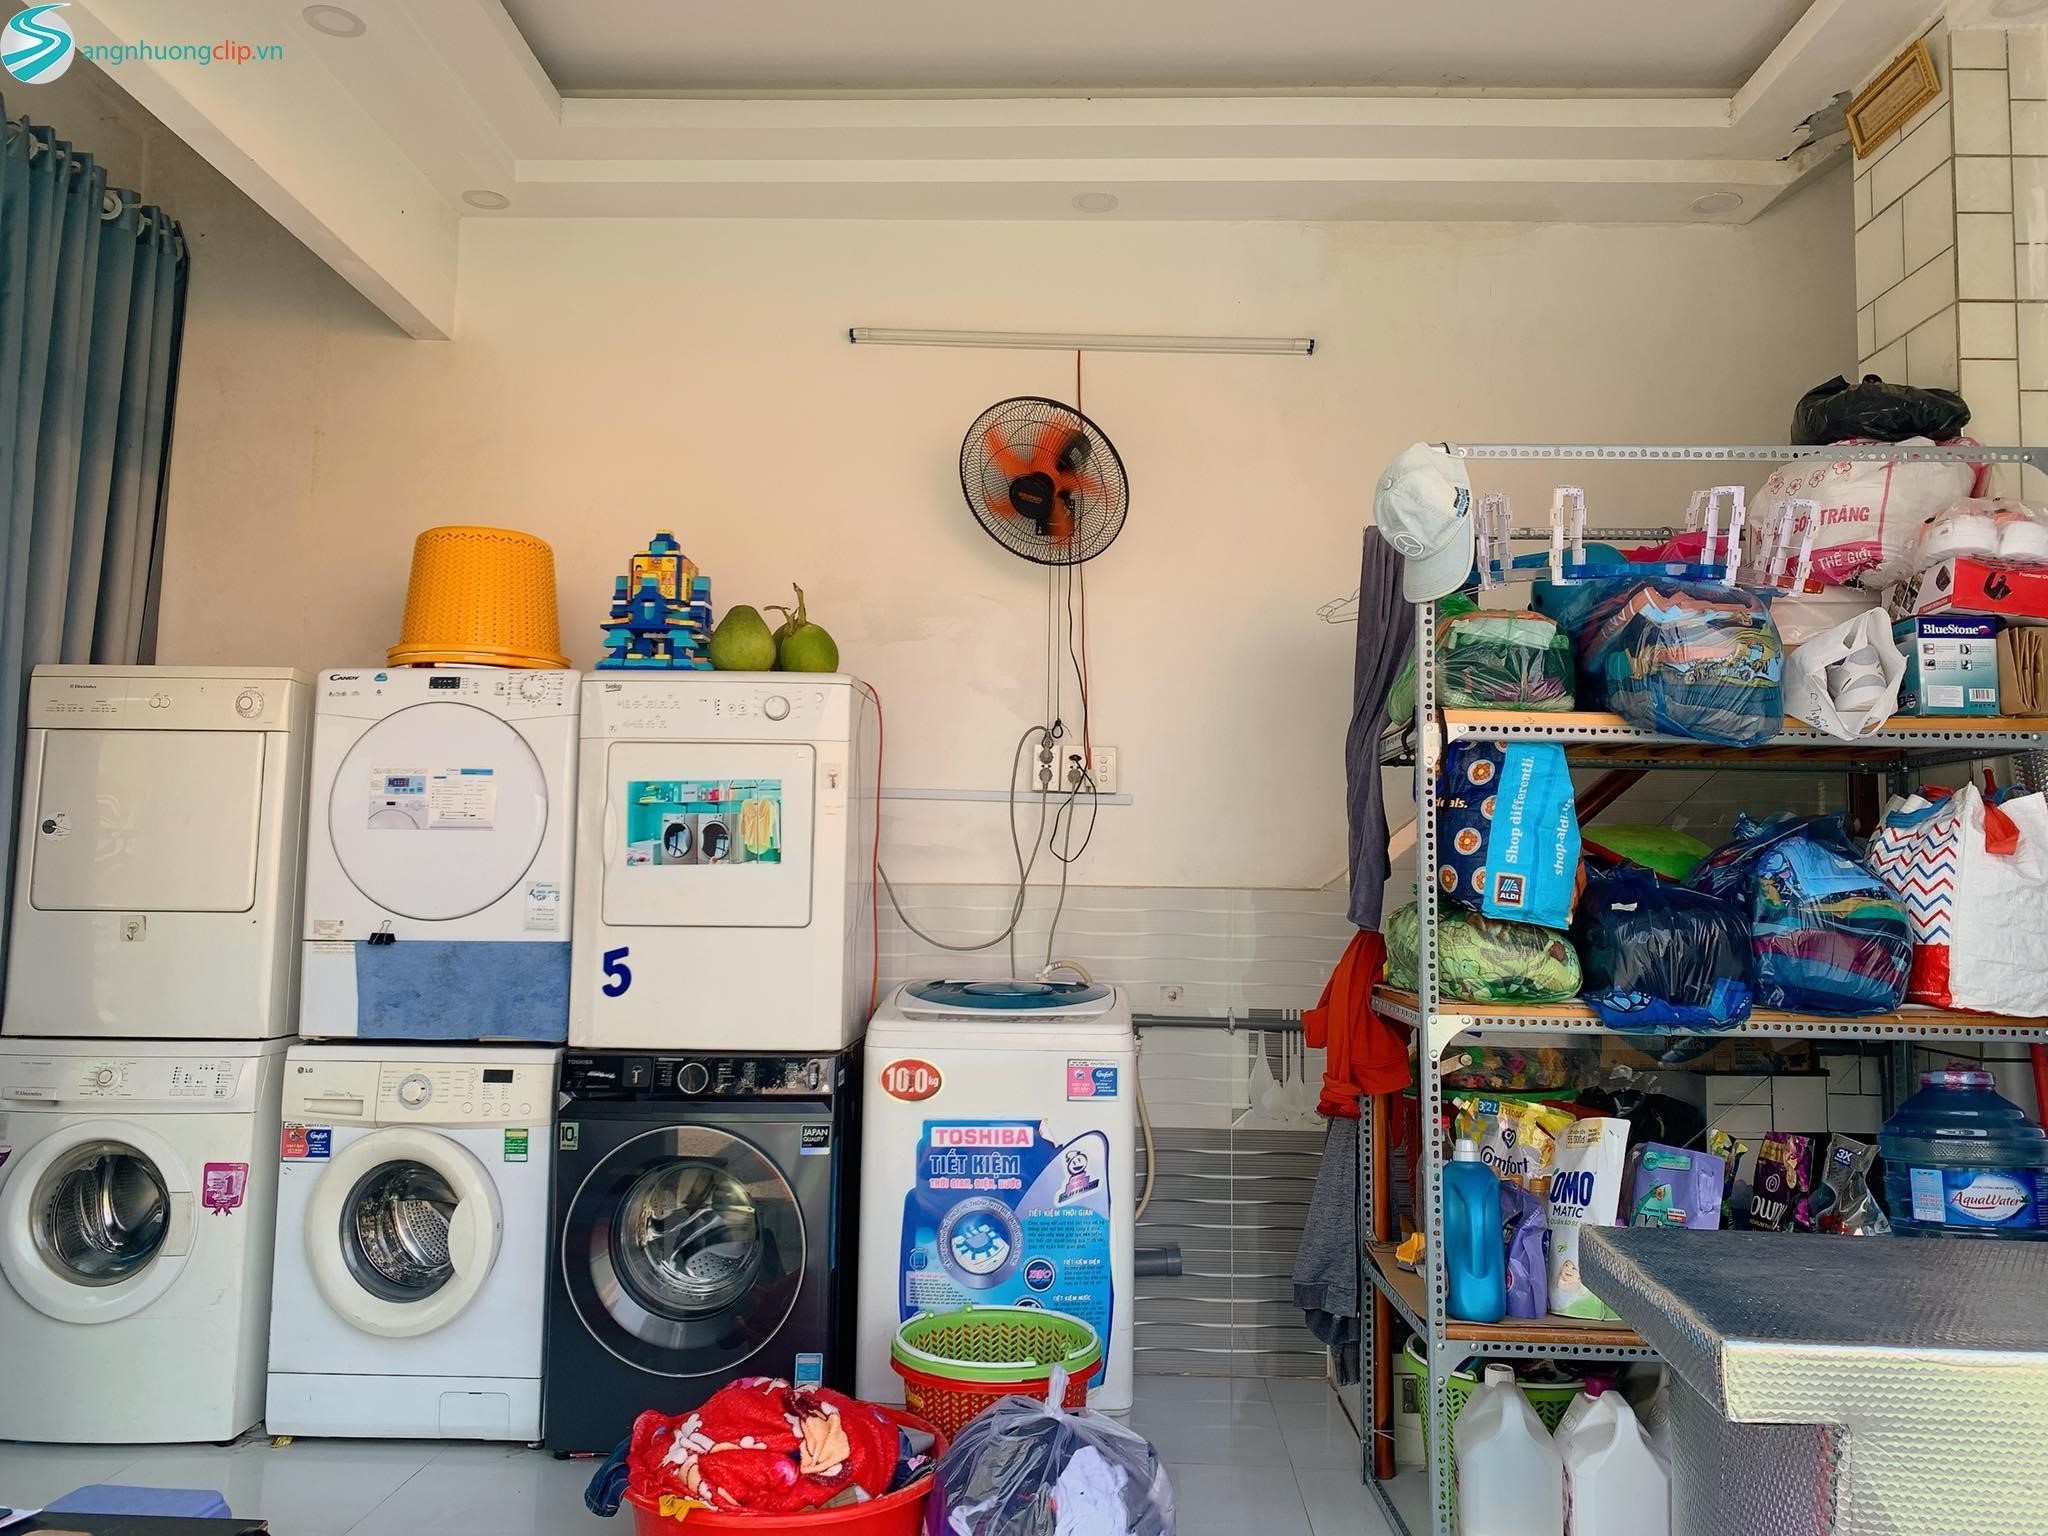 Dịch vụ giặt ủi quận 2 – Tiện ích giao nhận 2 chiều